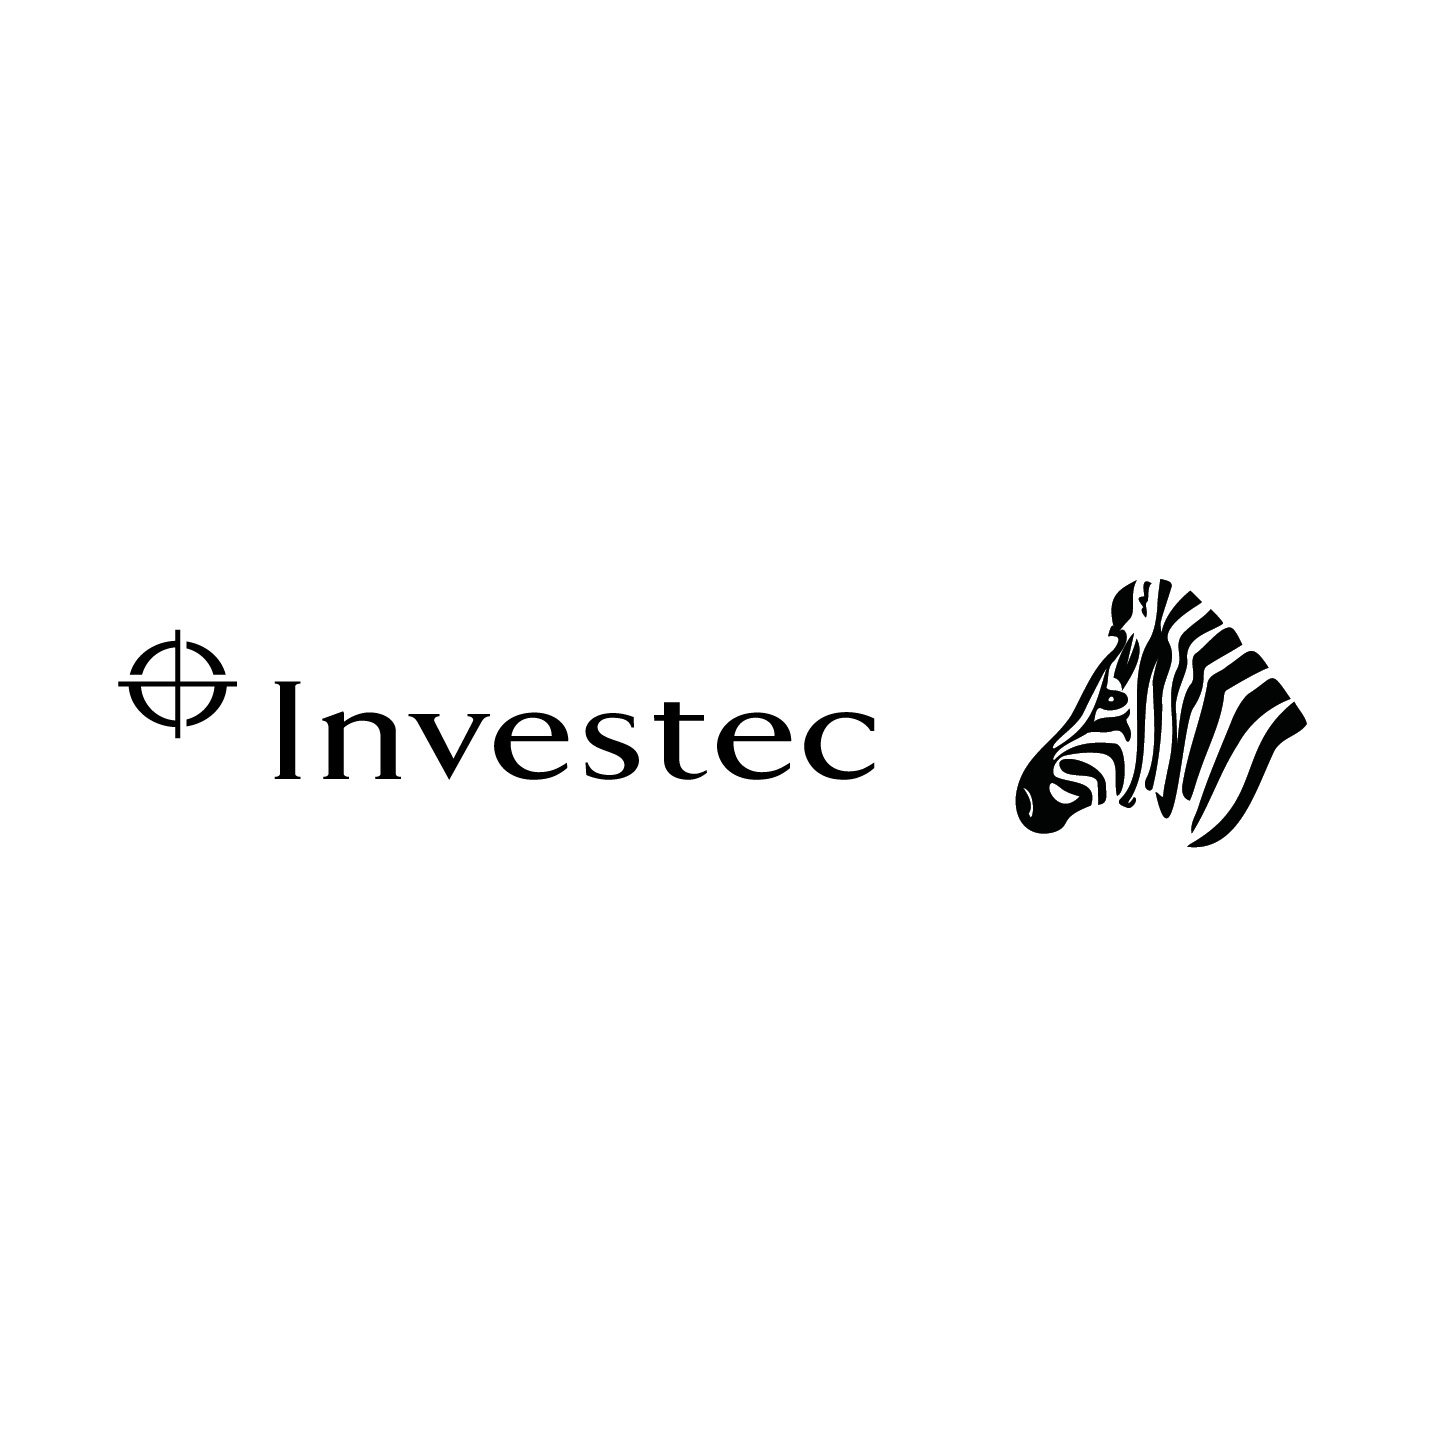 www.investec.com